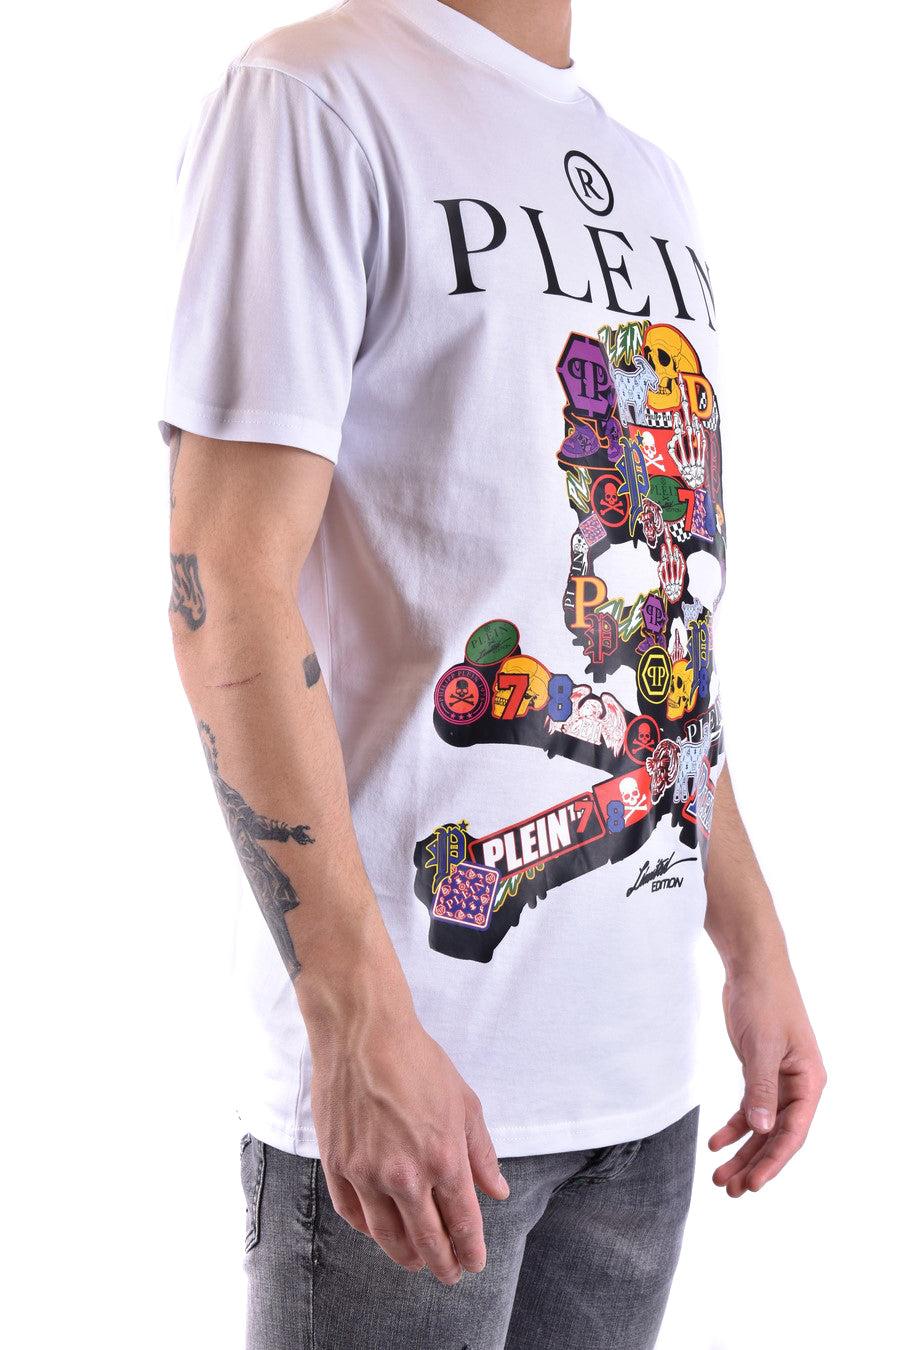 PHILIPP PLEIN Black/White Letters Men Casual T-shirt #P88189 M-3XL 